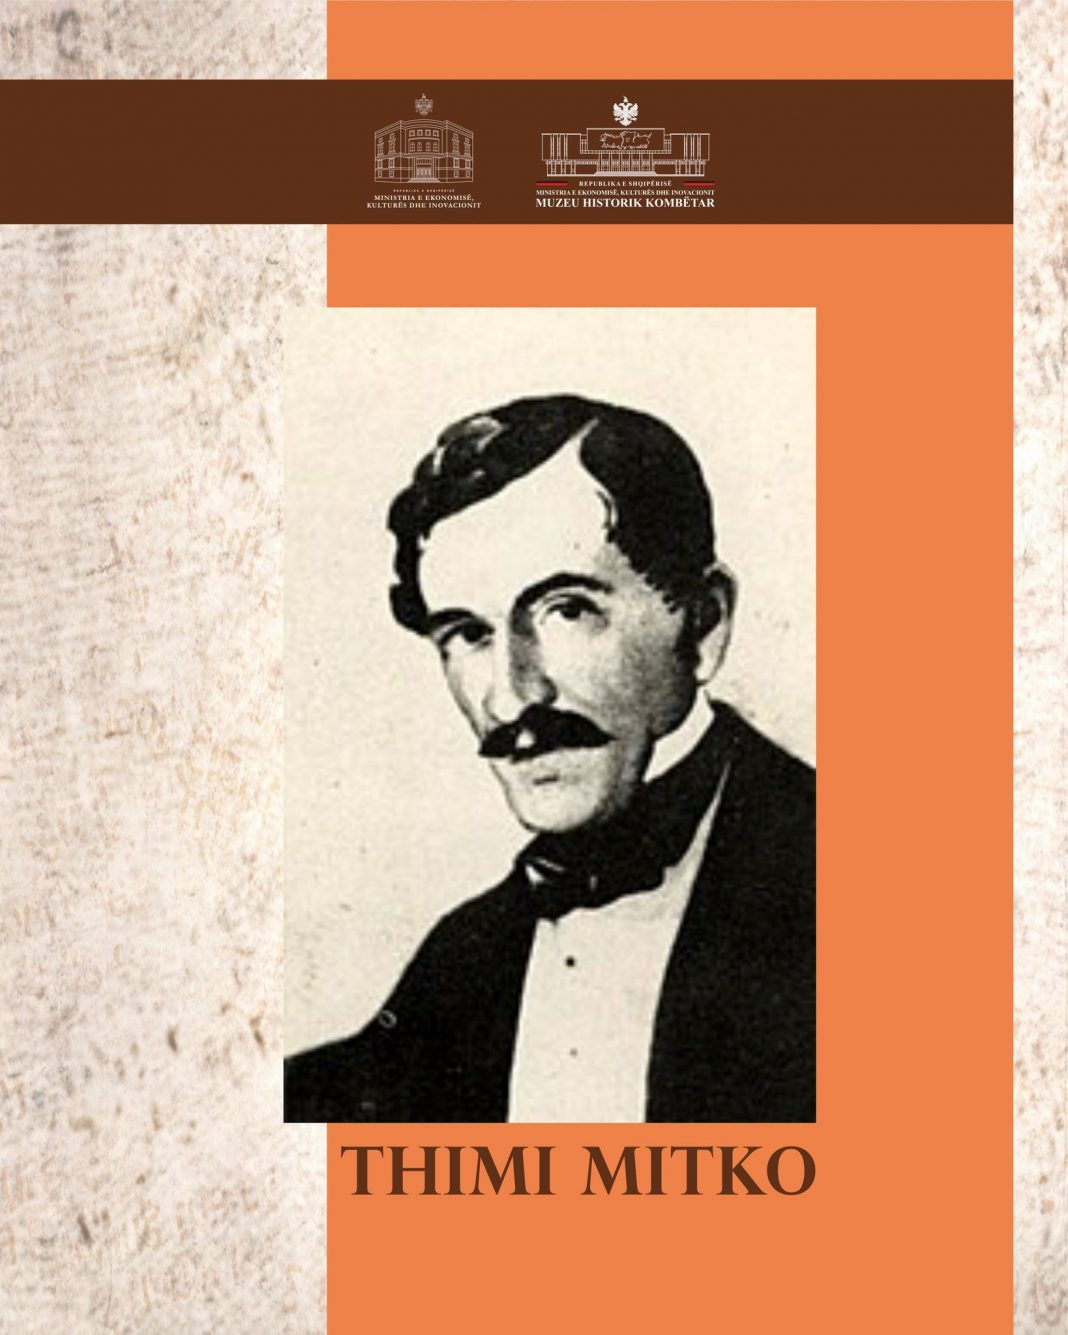 Përkujtohet sot Thimi Mitko, veprimtar i Zgjimit Kombëtar